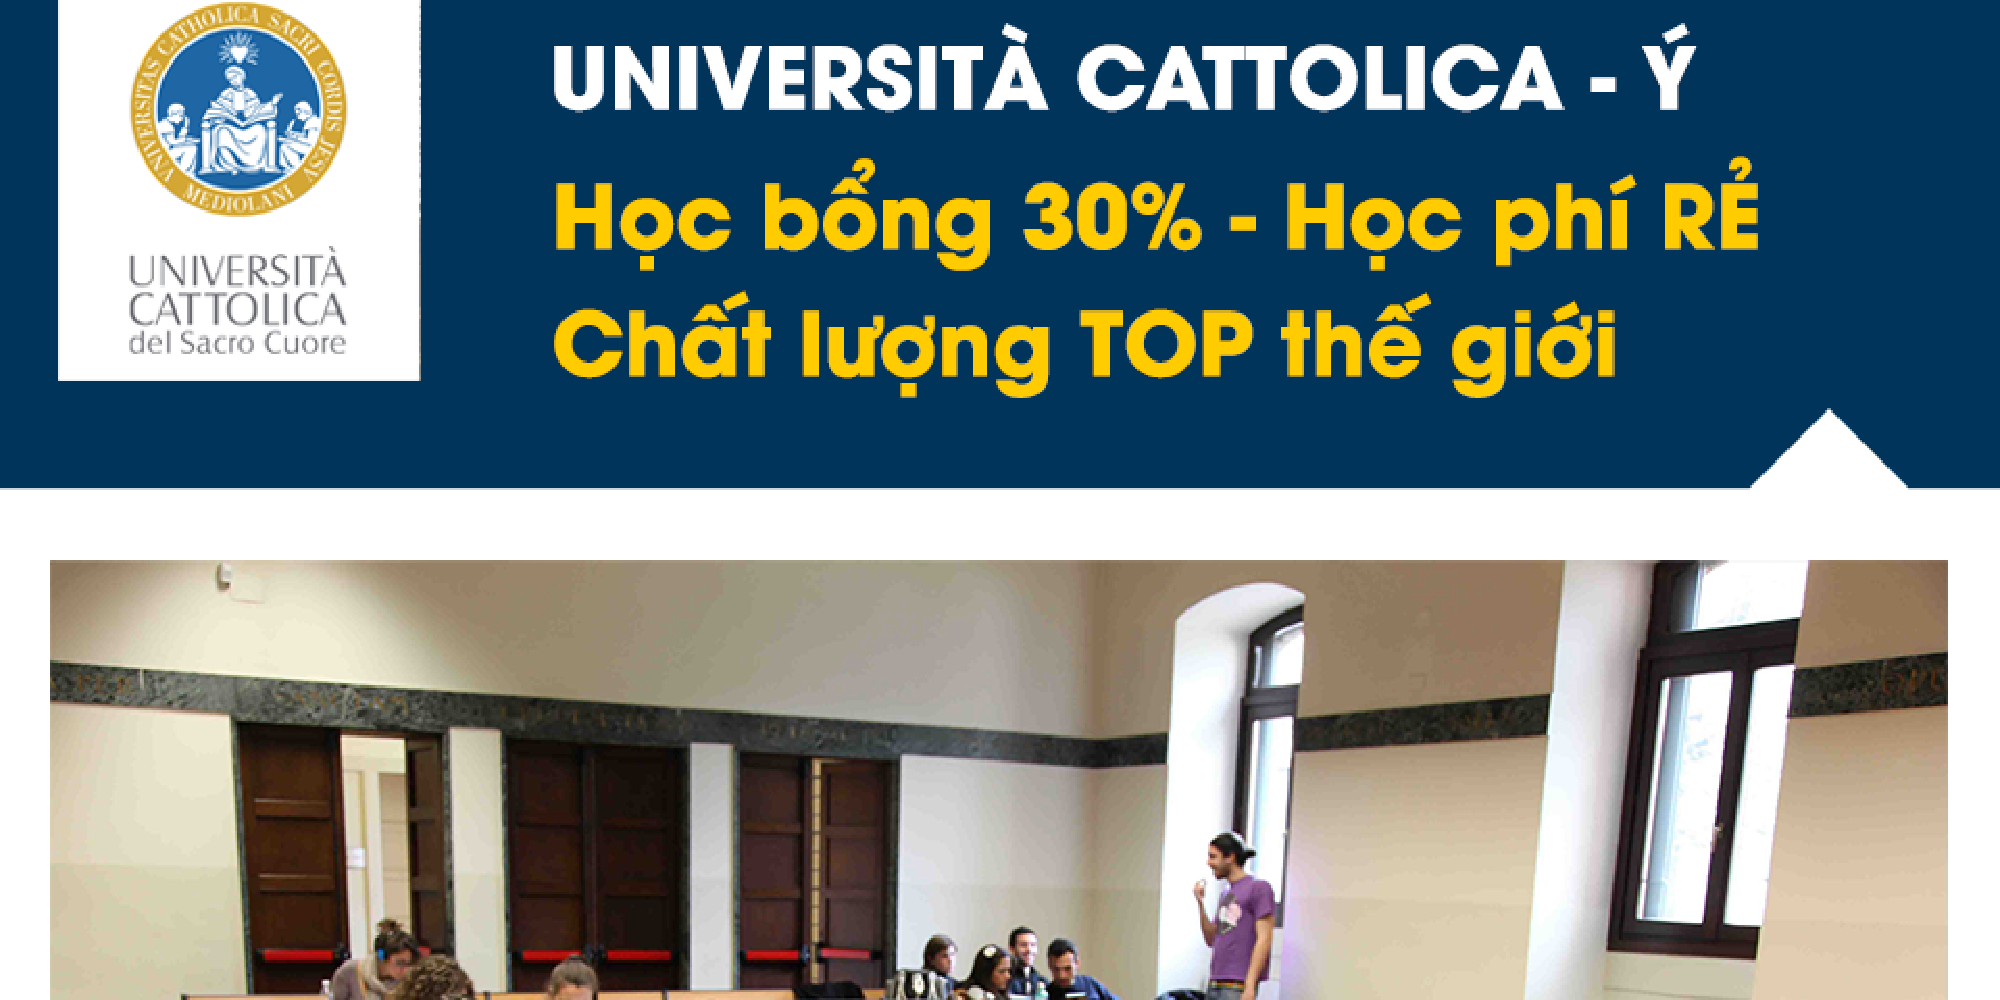 Mời trao đổi trực tuyến cùng trường Università Cattolica- Ý: Học bổng 30% - học phí rẻ - chất lượng TOP thế giới